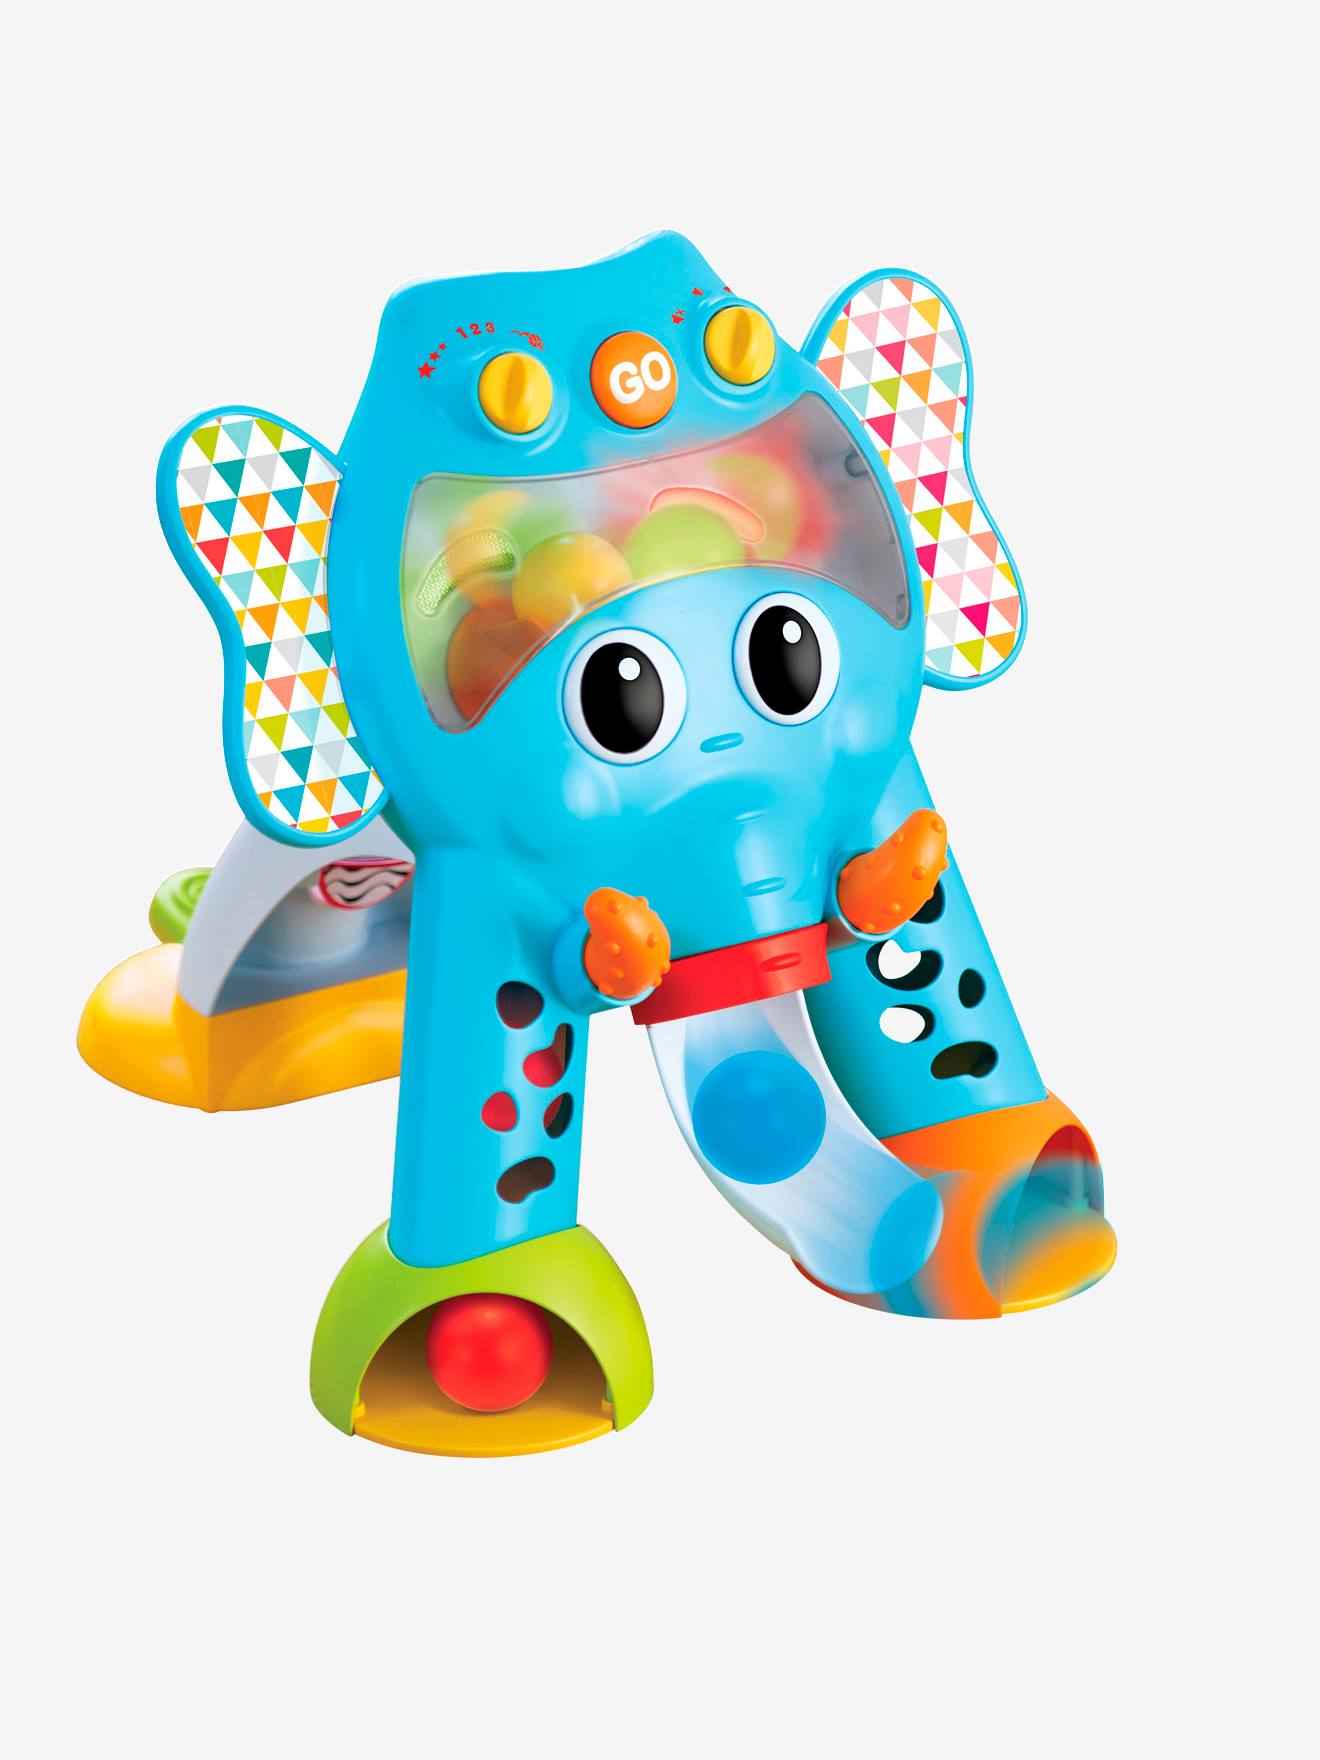 jouet bebe elephant